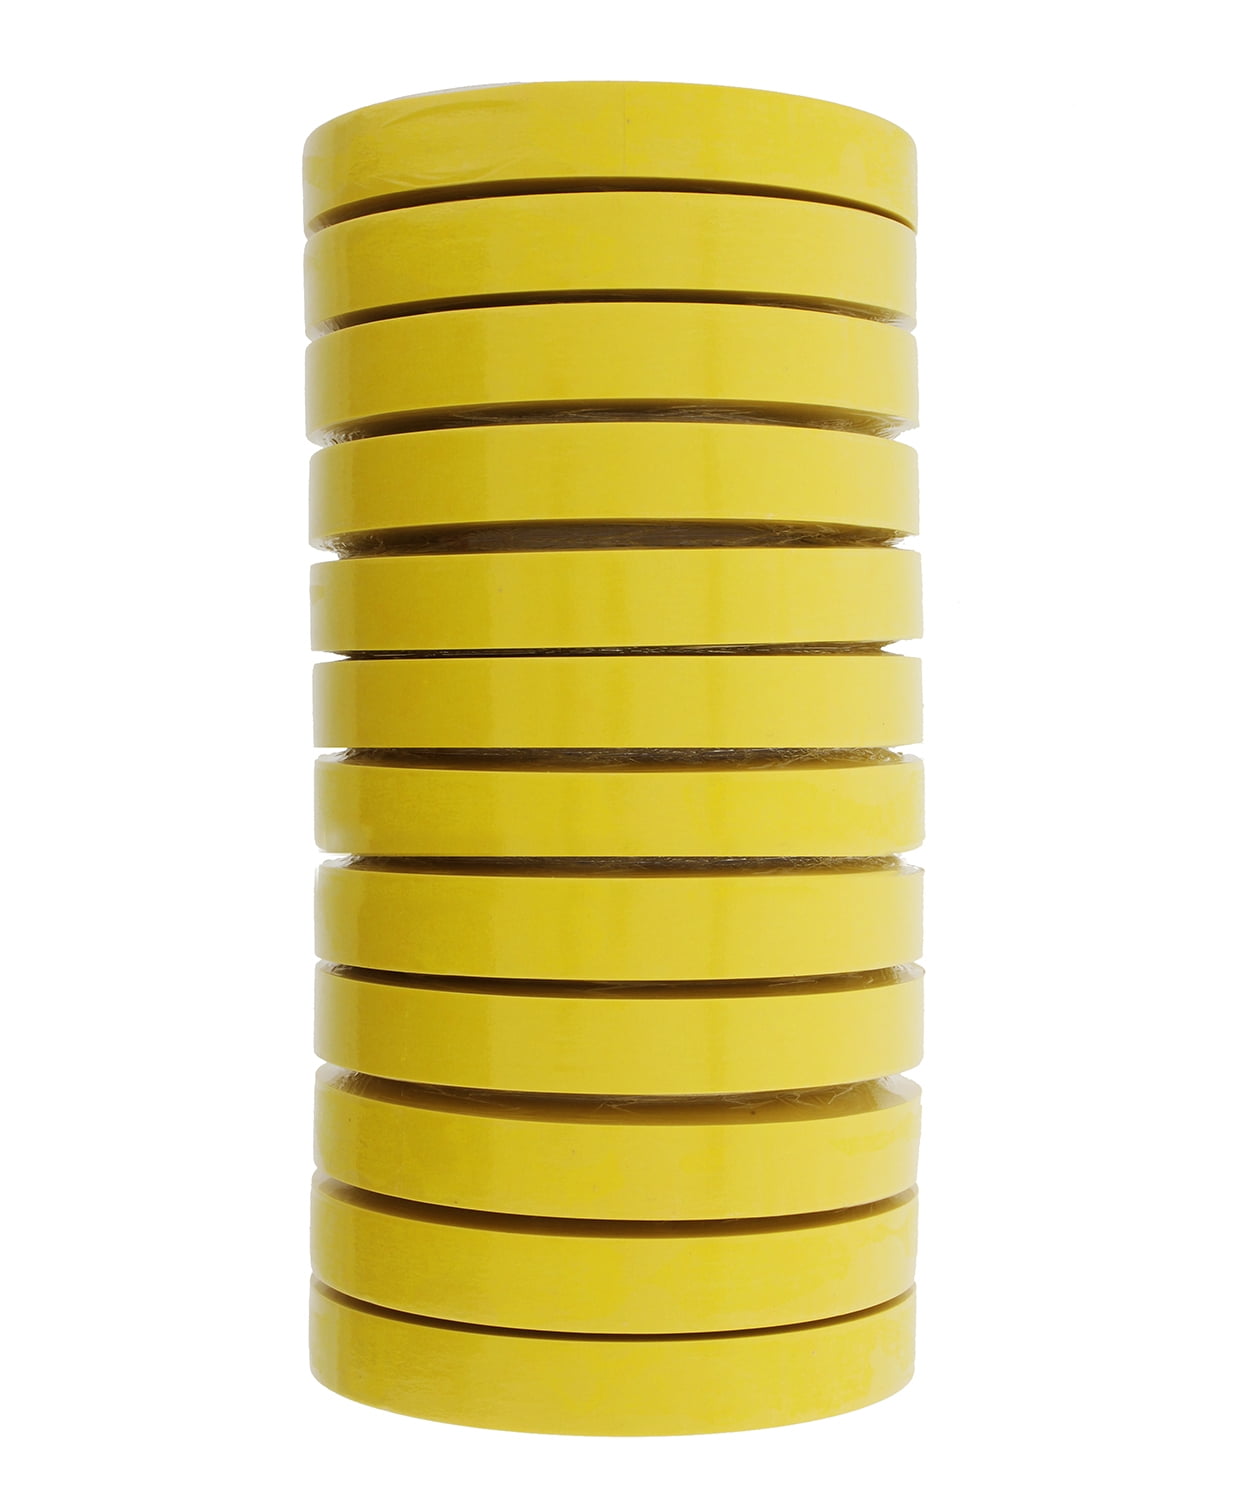 3M - 06653 - Automotive Refinish Yellow Masking Tape, 24 mm